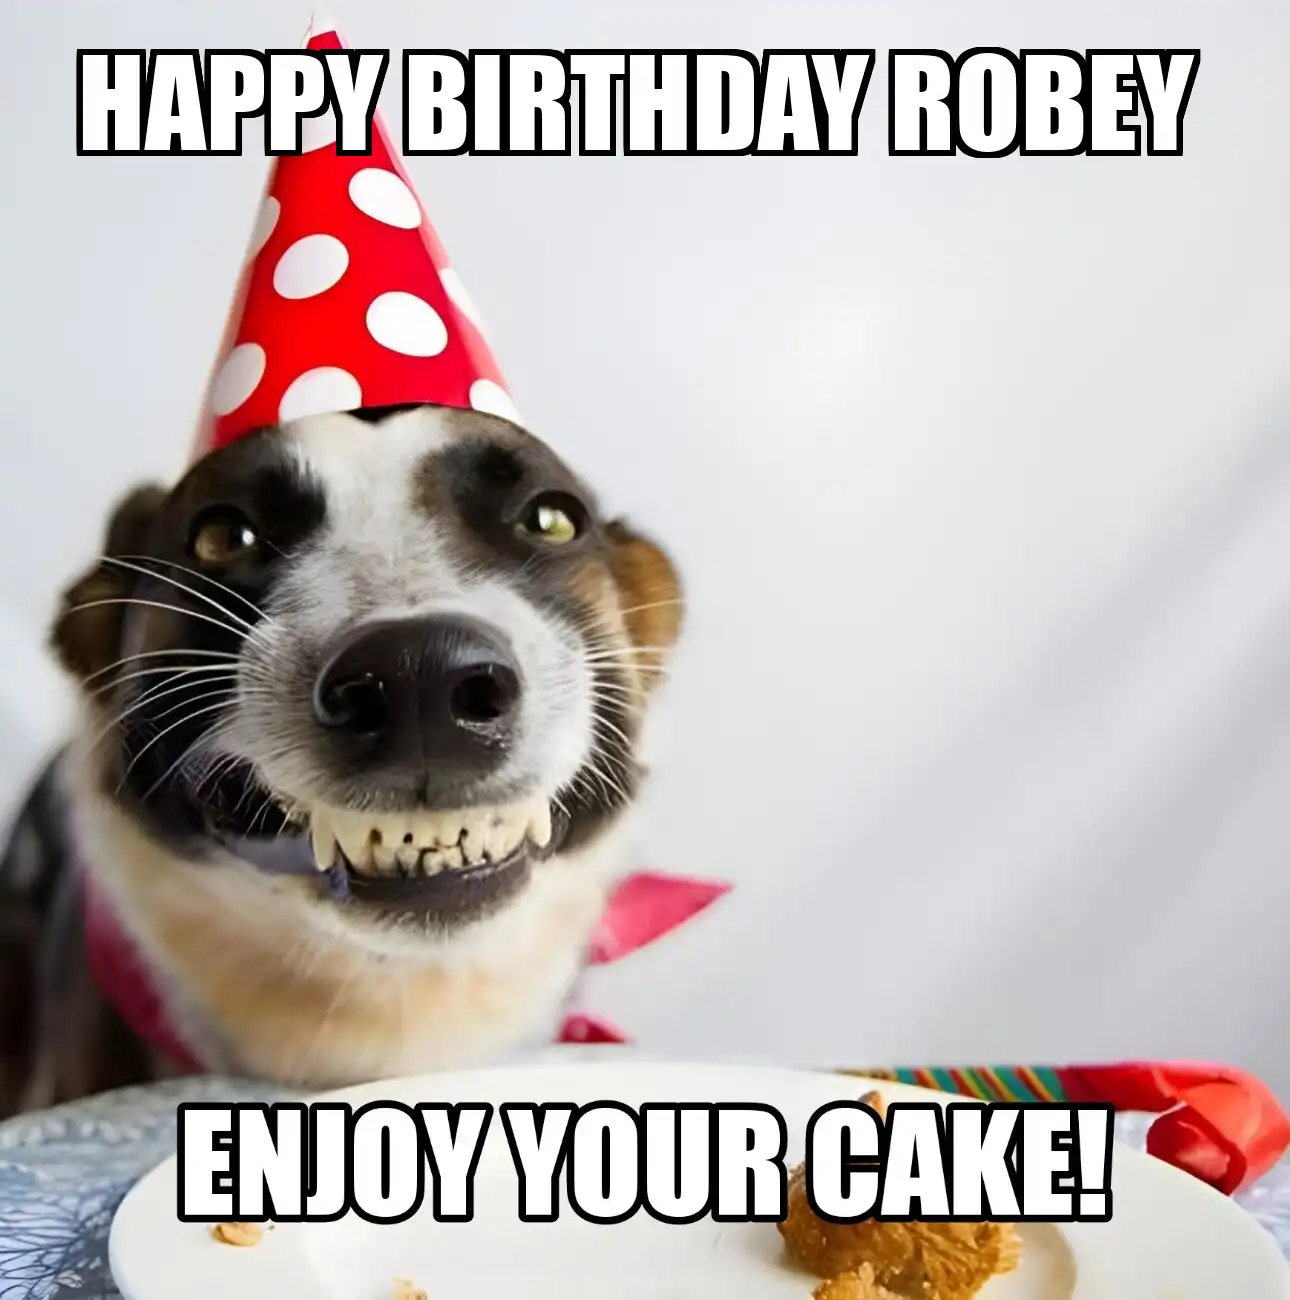 Happy Birthday Robey Enjoy Your Cake Dog Meme